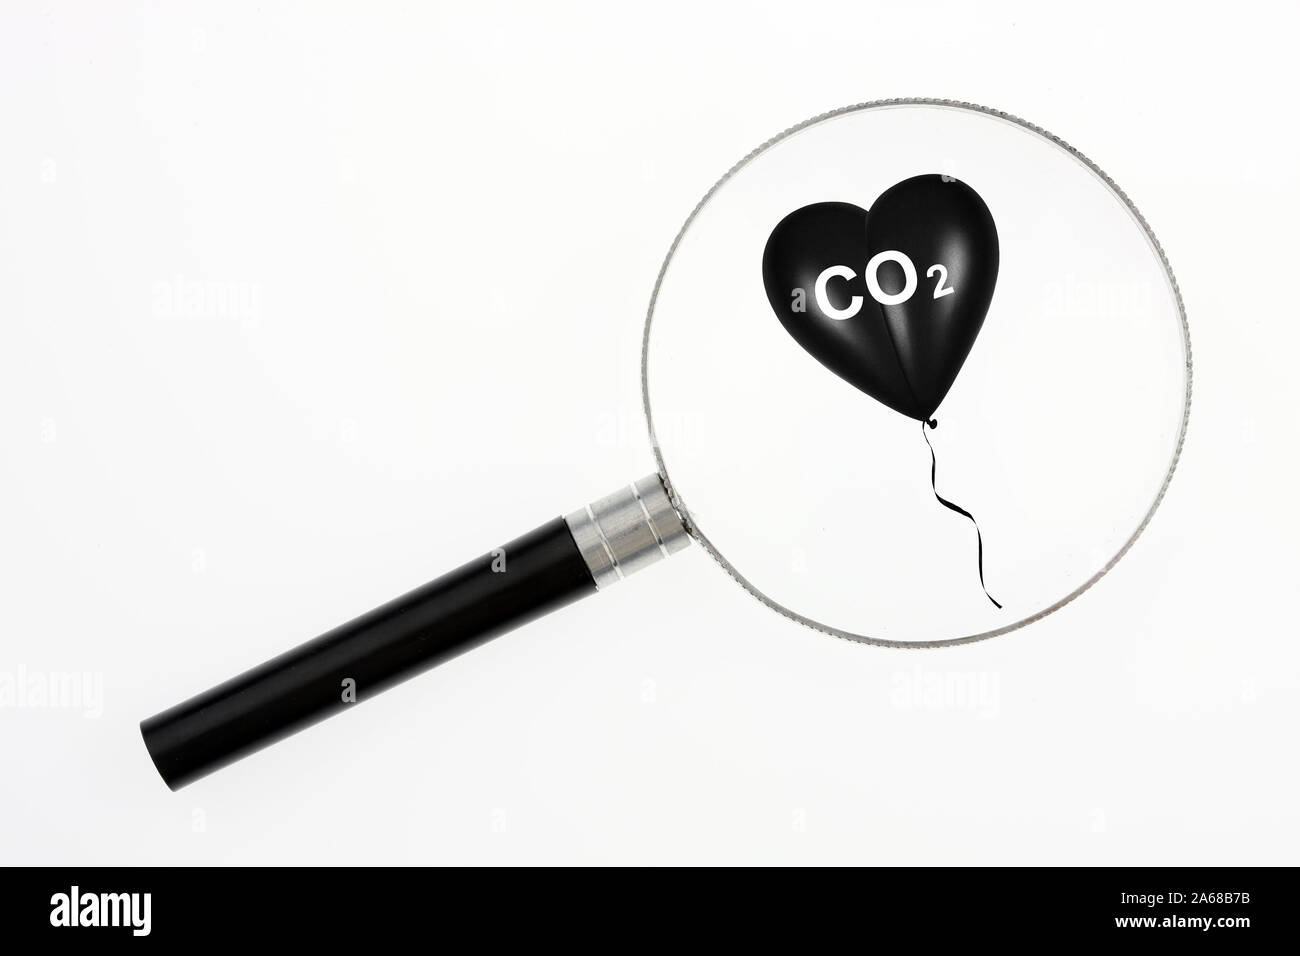 Schwarzes Herz, Luftballon, Herzluftballon, Aufdruck: CO2, Schadstoffe, unbrennbar, Gas, Atemluft, Erkrankung, Umwelt, Umweltverschmutzung,. Kalender, Foto Stock